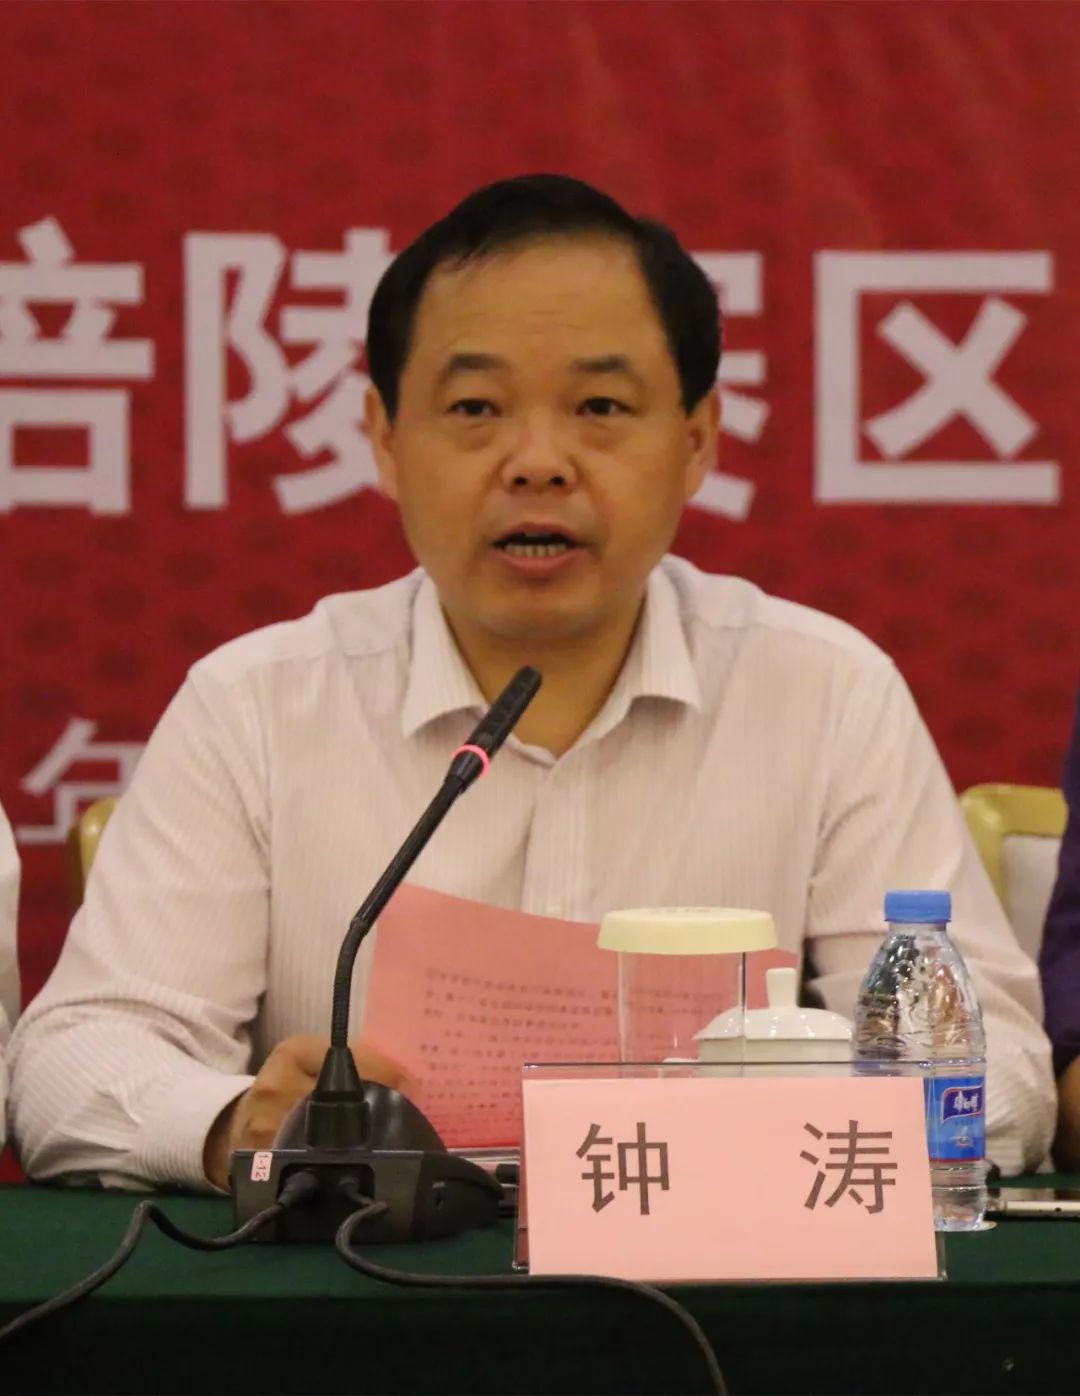 区政府副区长钟涛在发布会上表示,为确保赛事成功举行,区政府将在场馆